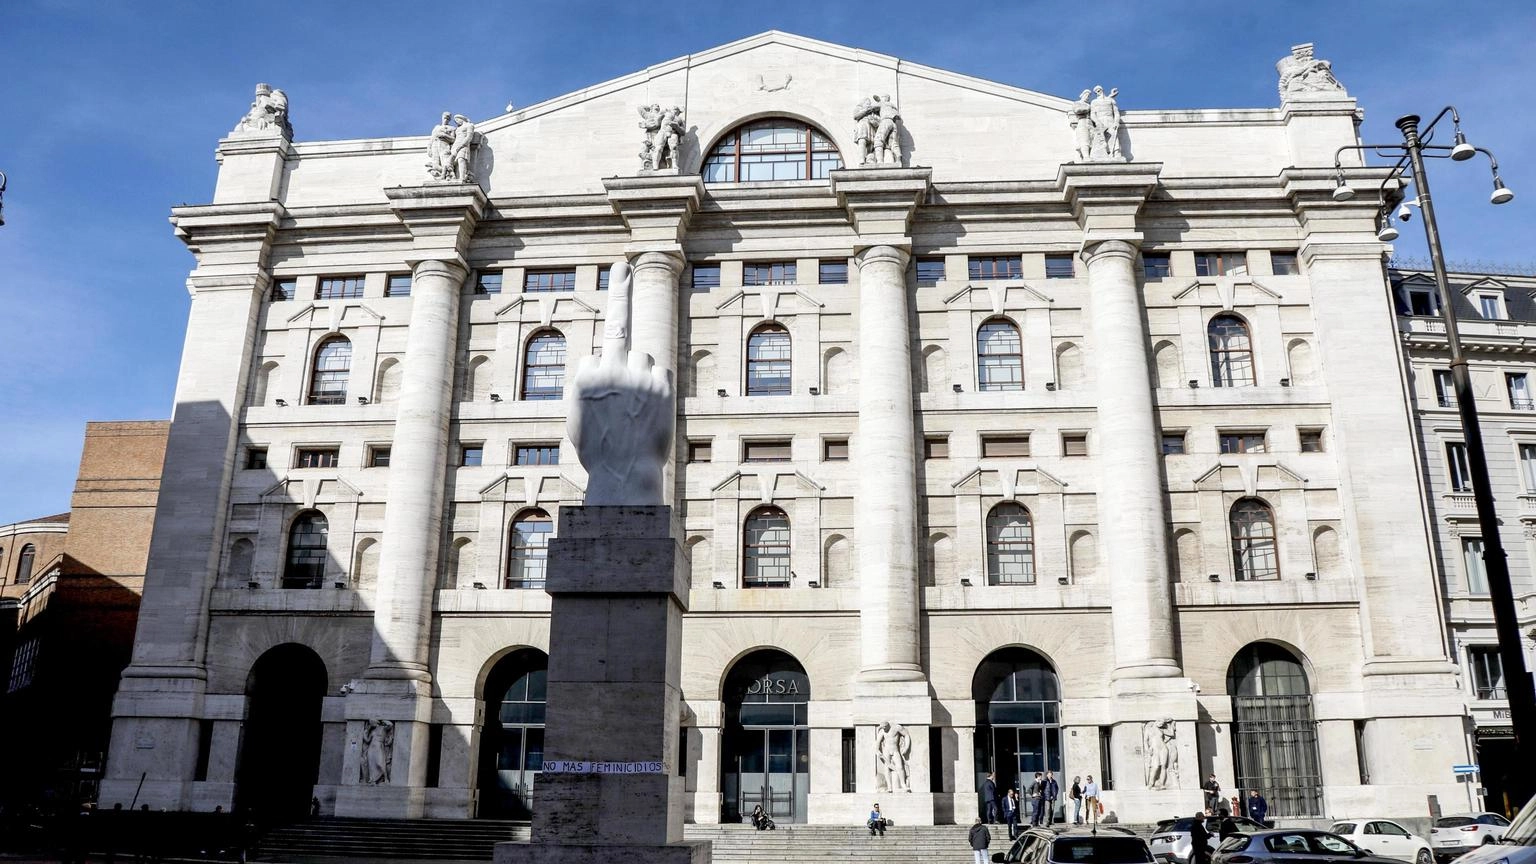 Borsa: Milano chiude in lieve rialzo, Ftse Mib +0,2%